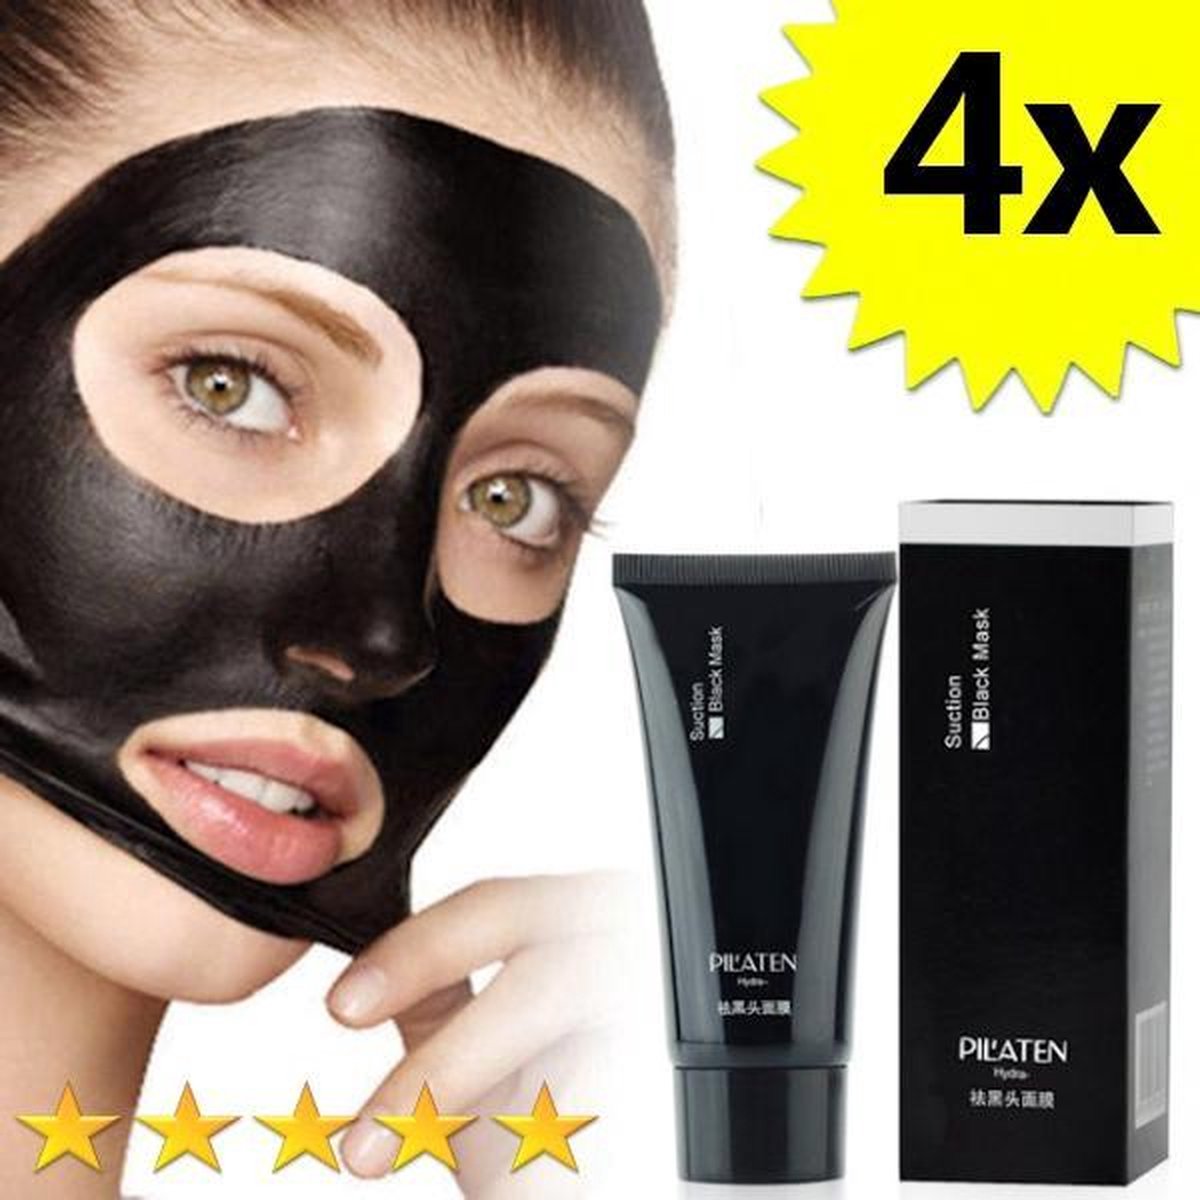 4 x Blackhead Masker Deluxe | Pilaten | Mee eters verwijderen dankzij het  Zwarte masker | bol.com